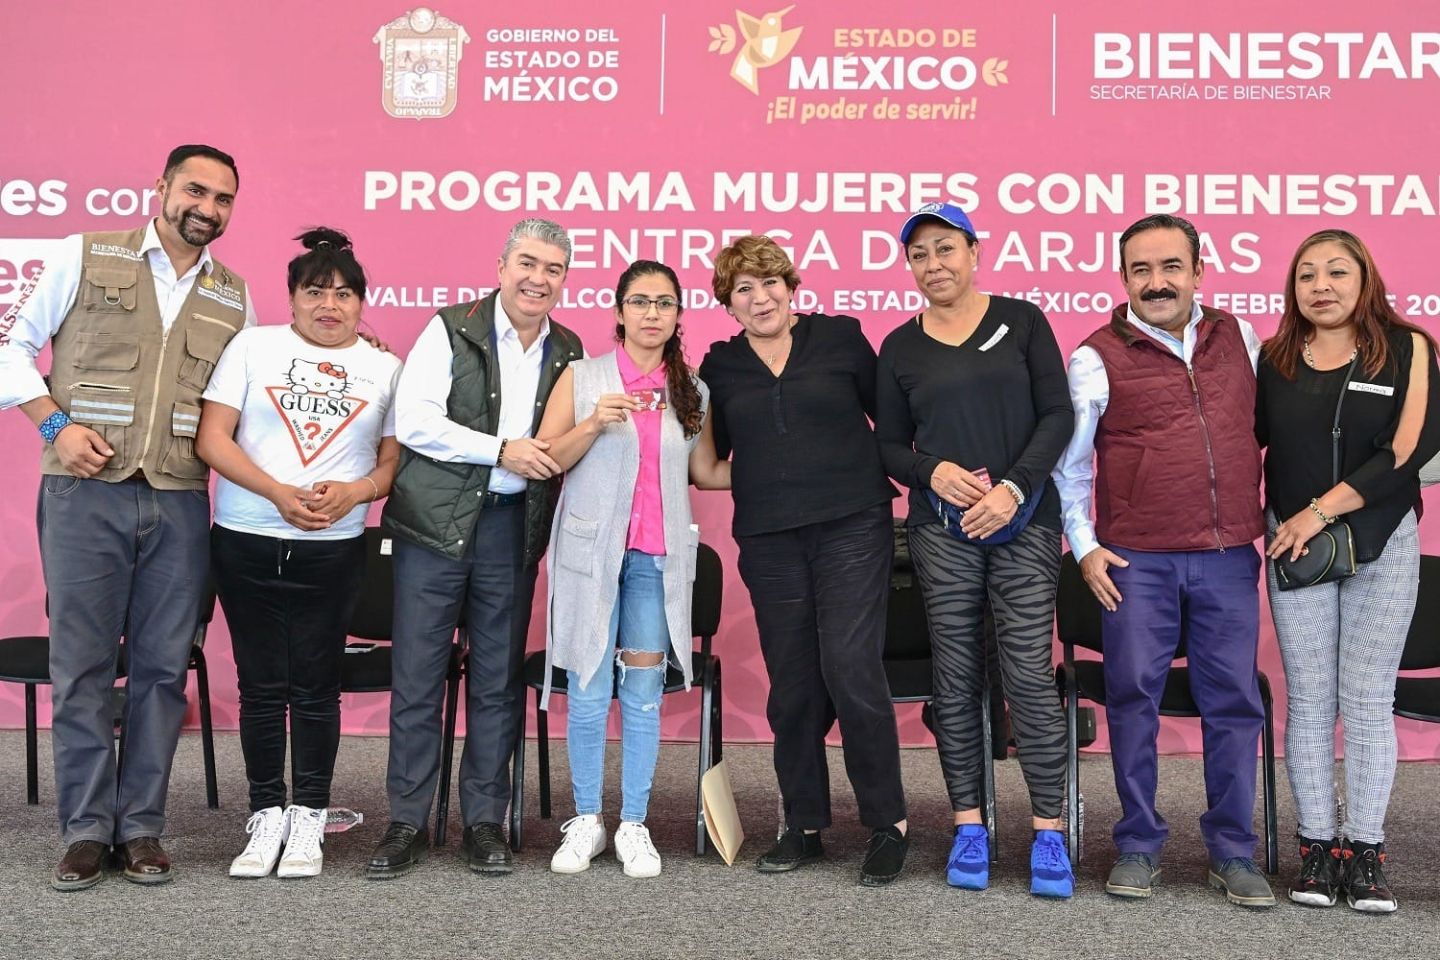 Beneficiarias de Tarjeta Mujeres con Bienestar
Recibirán 7 mil 500 Pesos en el Estado de México
